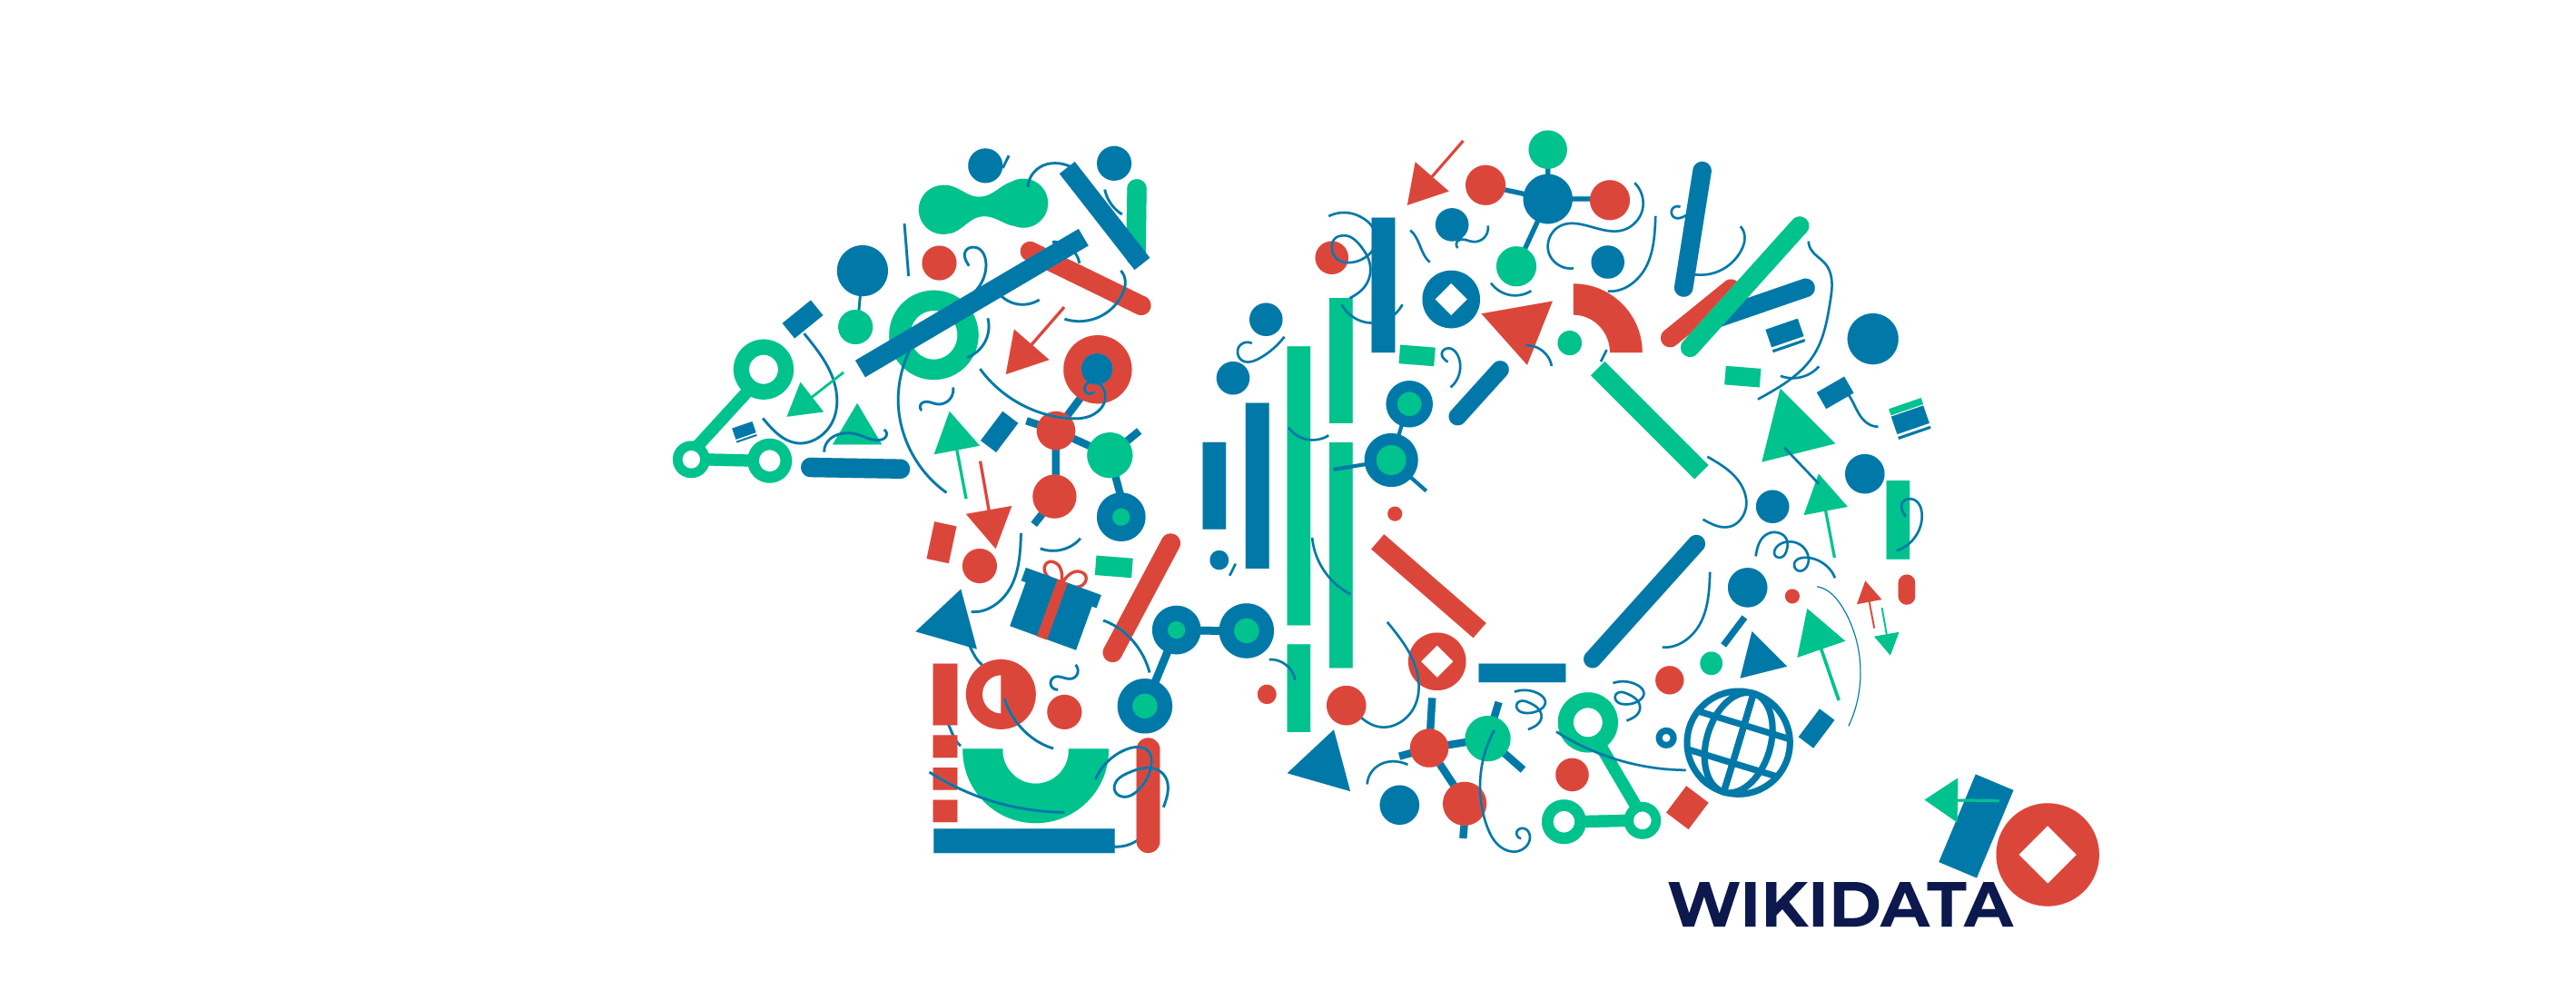 Wikidata 10th Anniversary